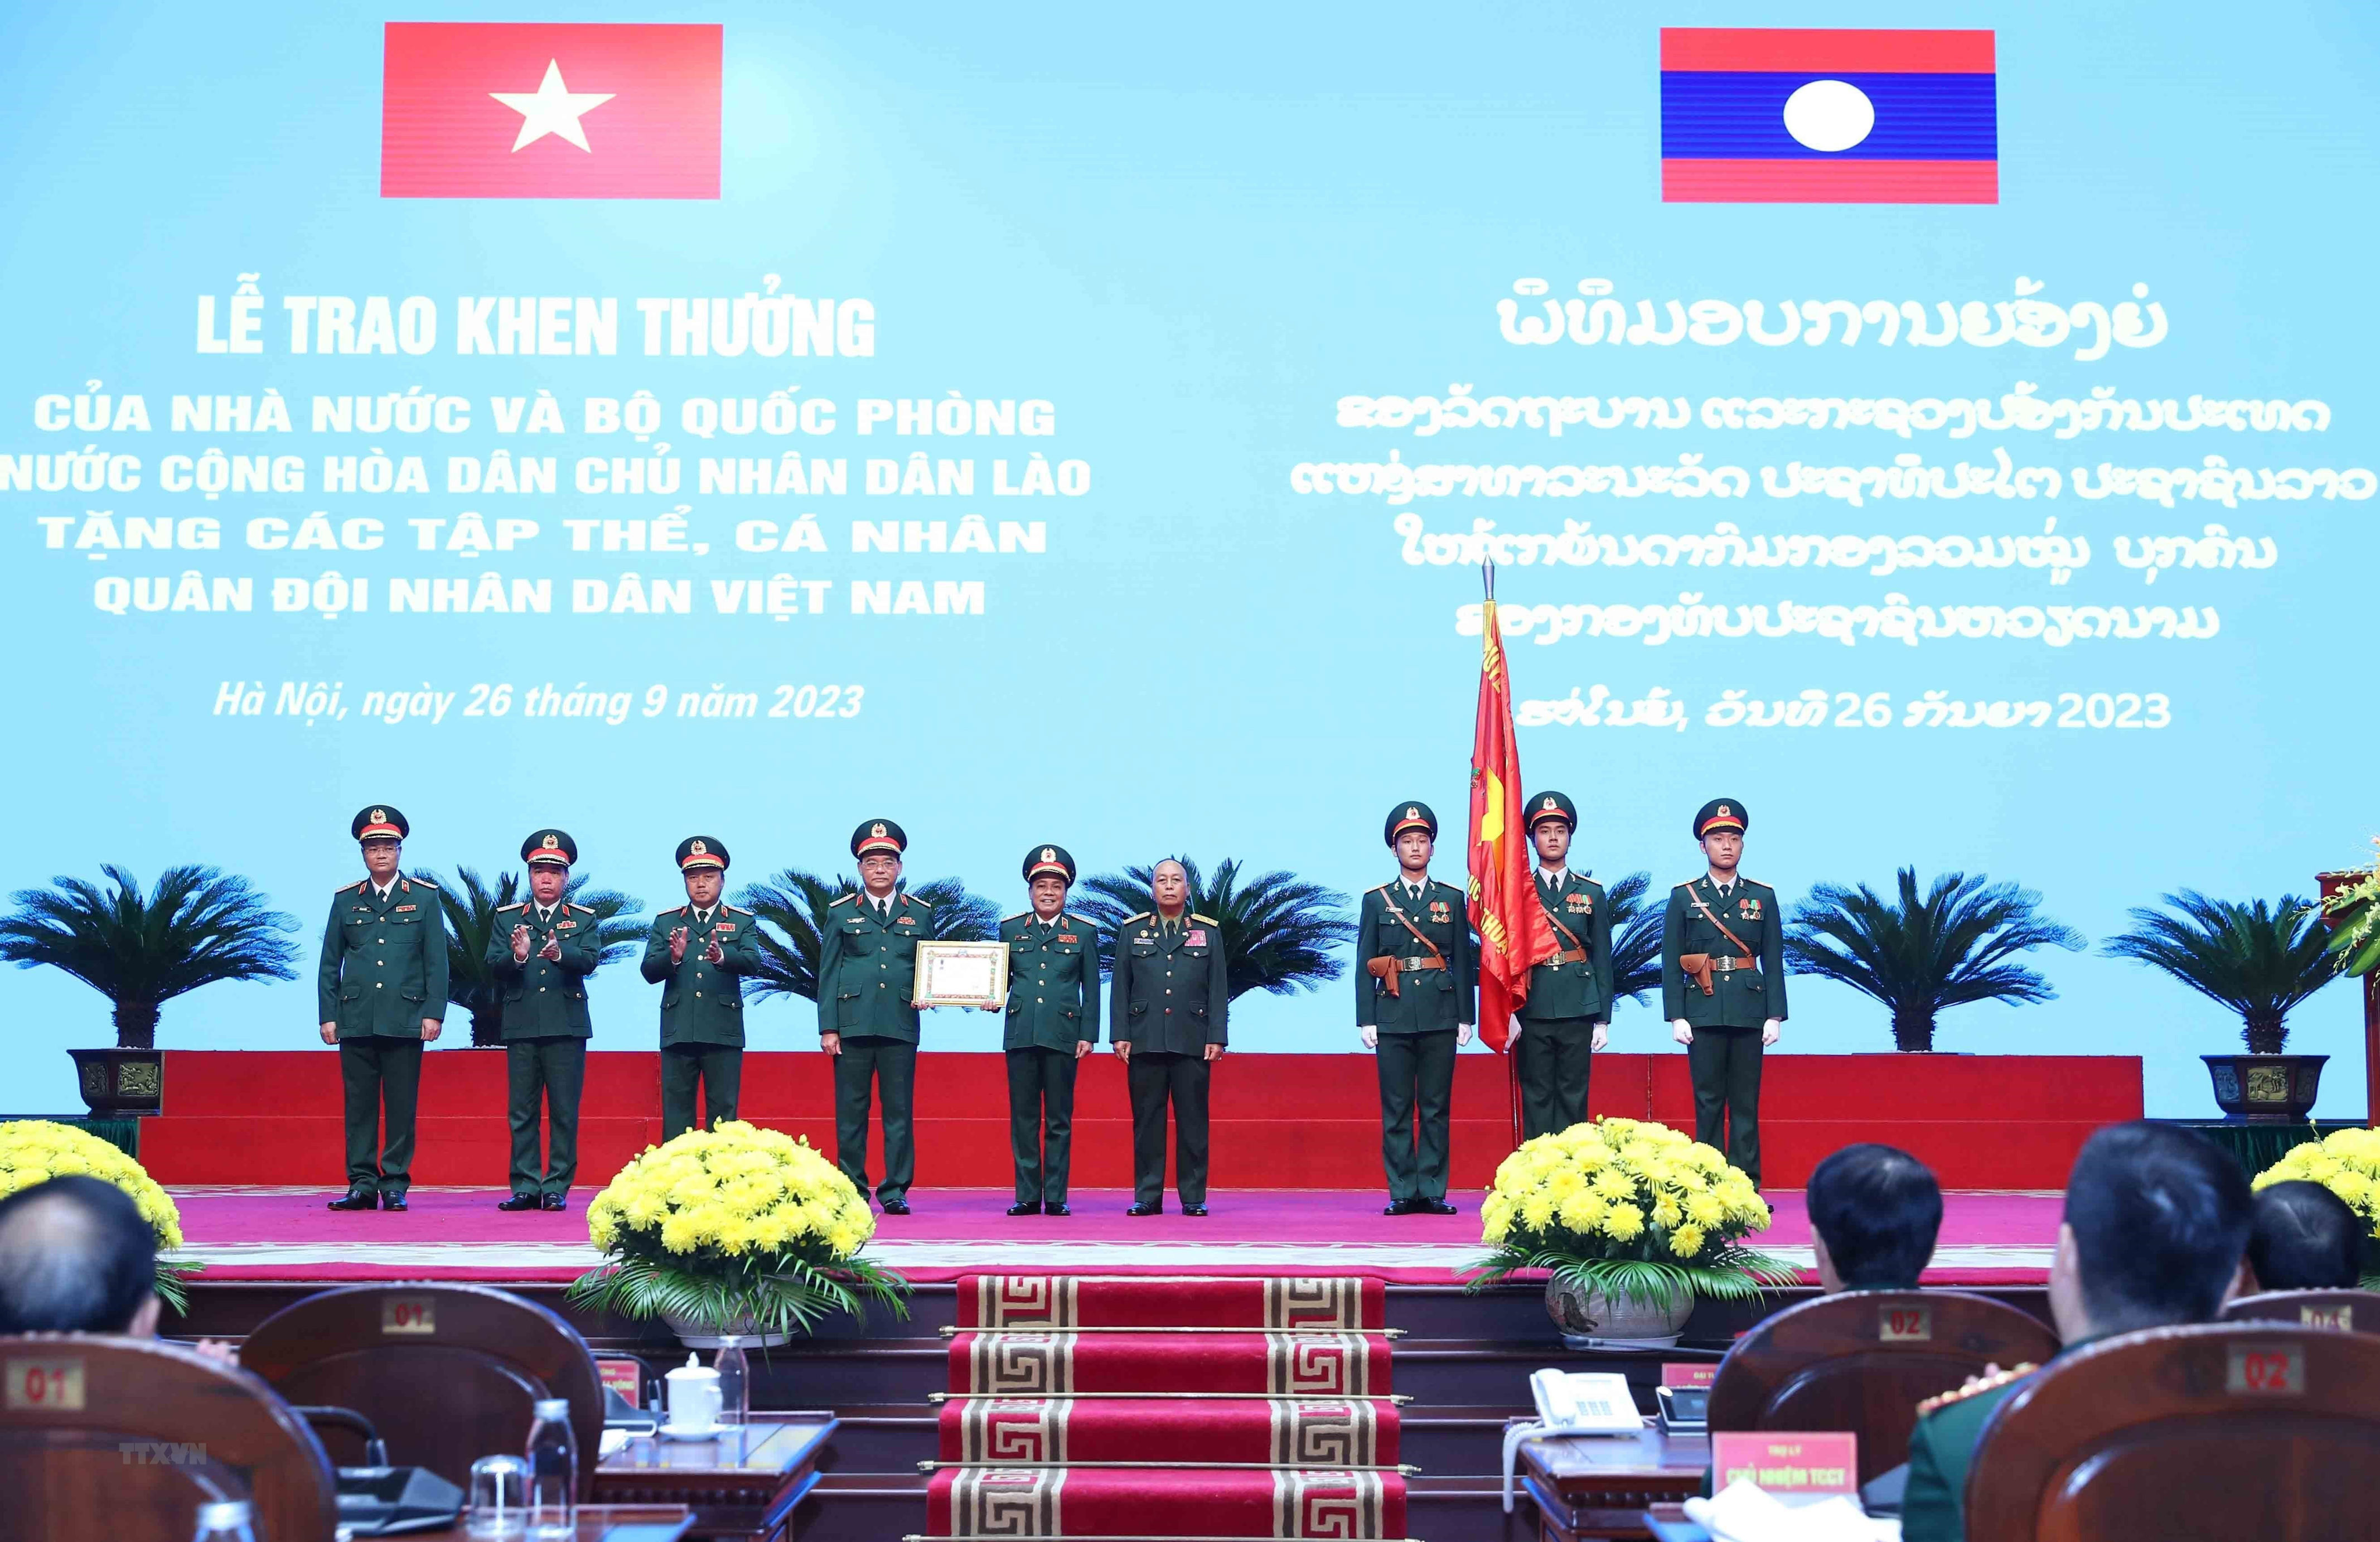 Nhà nước và BQP Lào khen thưởng 68 tập thể, cá nhân QĐND Việt Nam